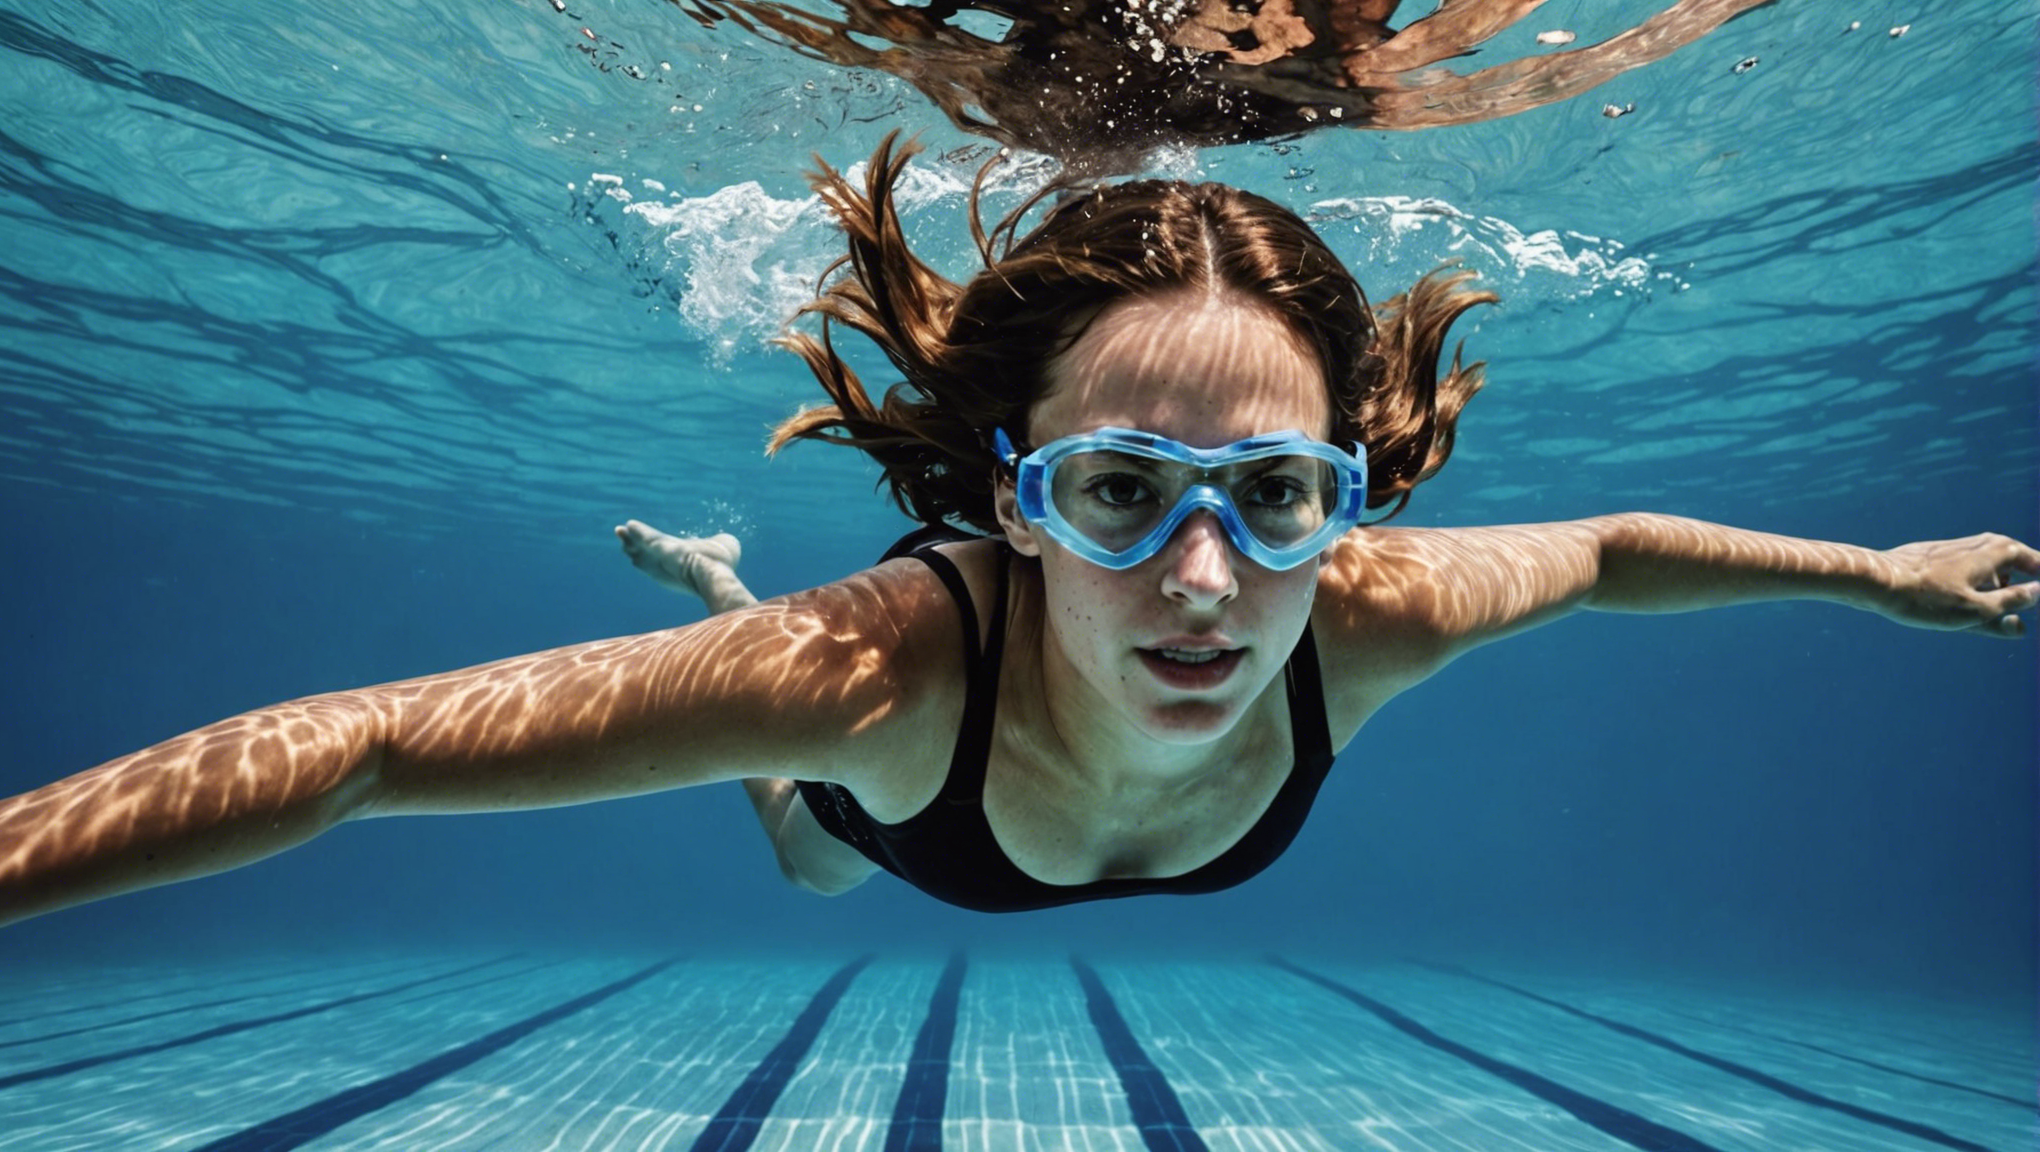 découvrez les bienfaits de la natation et les résultats positifs sur le corps et l'esprit. apprenez comment la natation peut améliorer votre forme physique et votre bien-être.